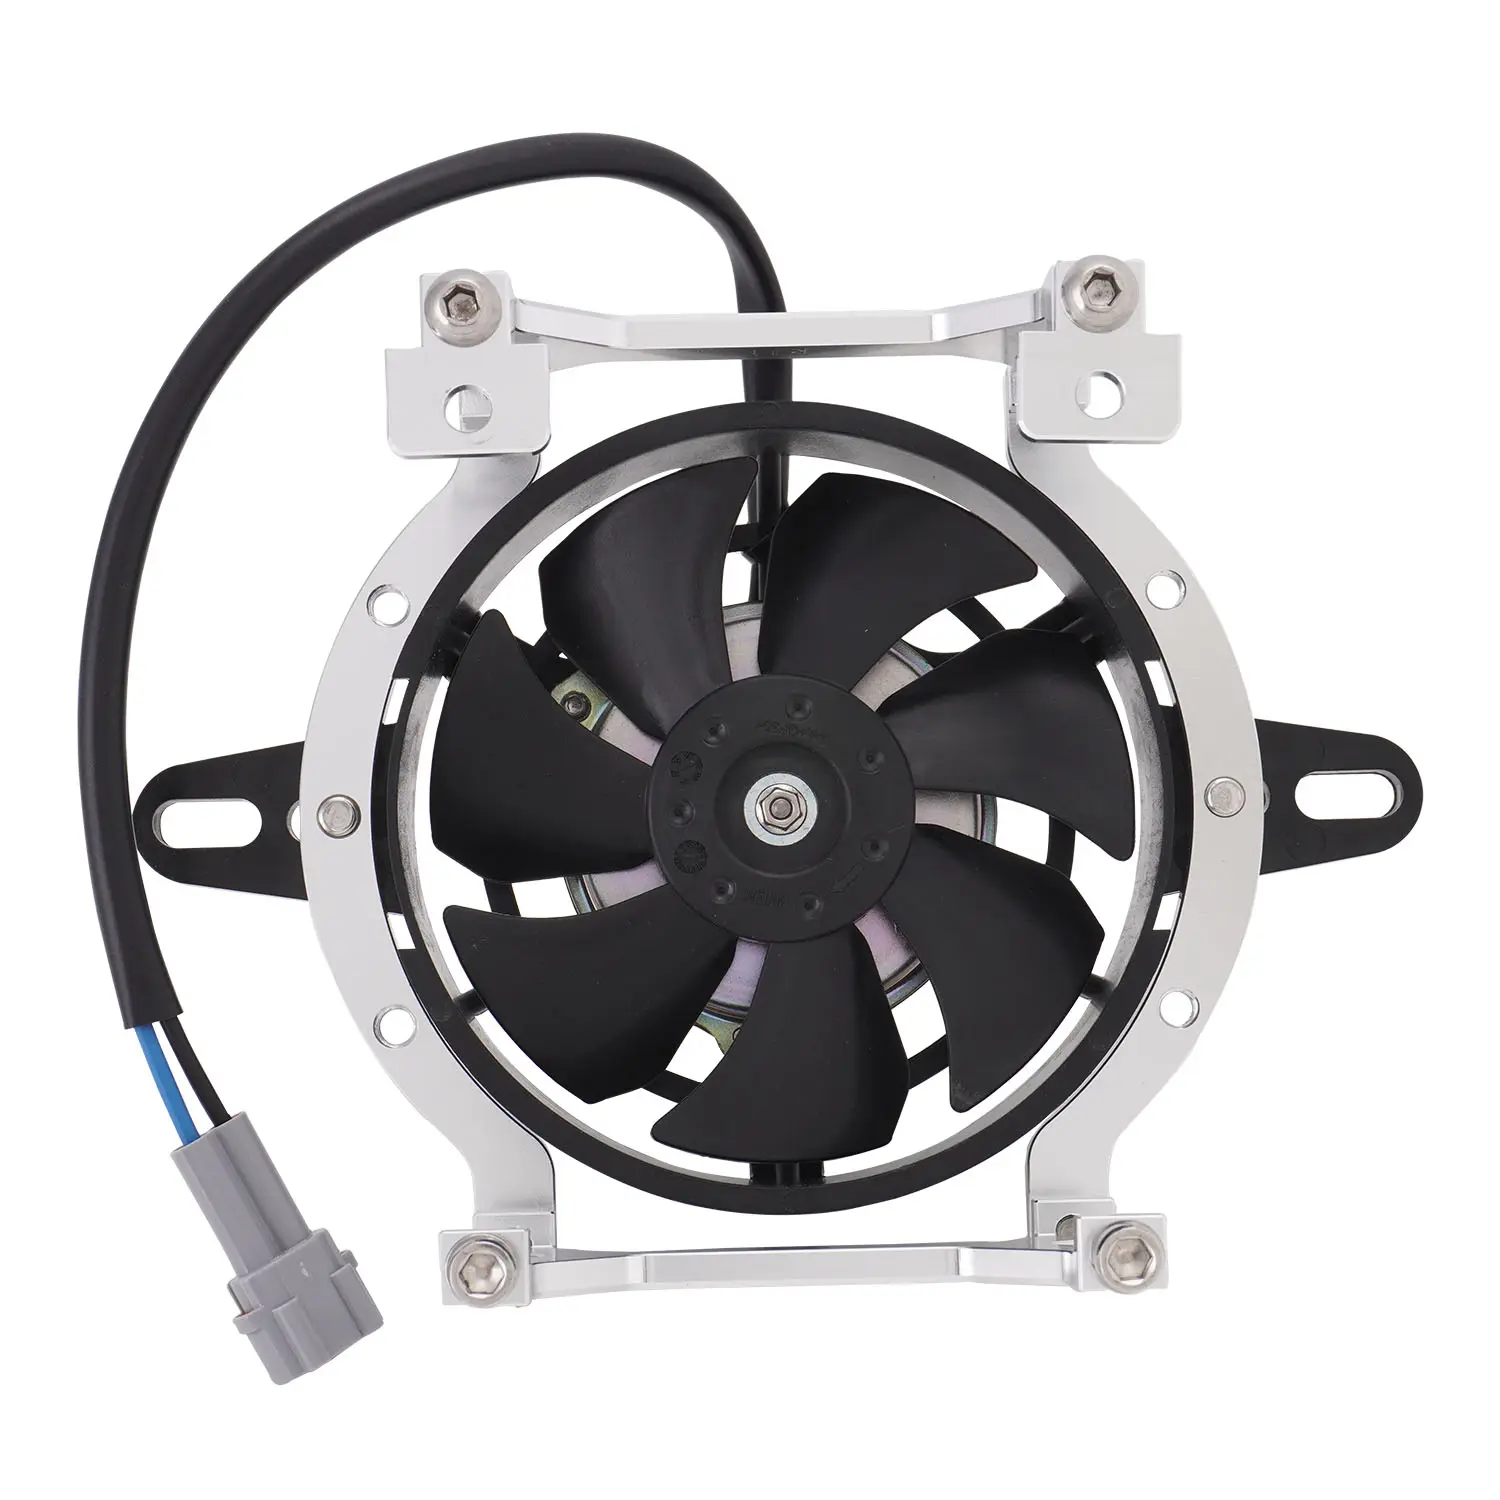 Ventilateur de refroidissement JFG + ventilateur de prise 120mm/4.72 "pour quad chinois ATV 4 roues Dirt Pit moto moto (orange, argent, noir)